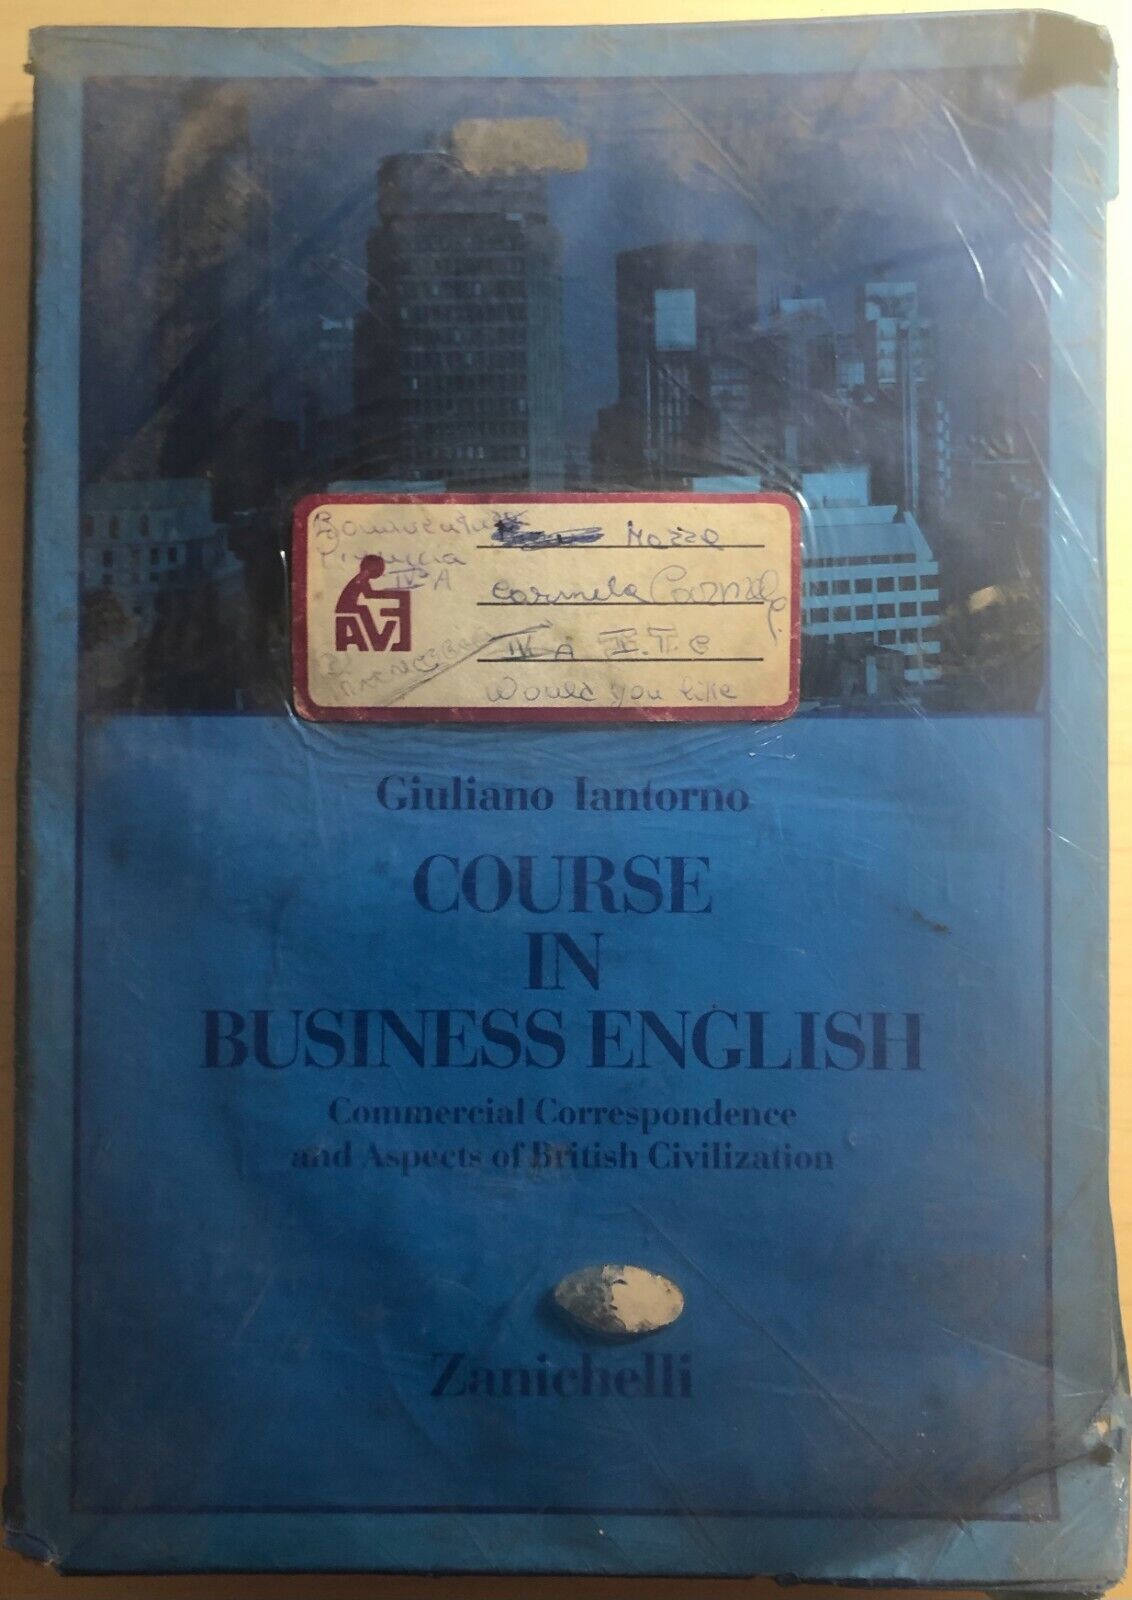 Course in business english di Giuliano Iantorno,  1987,  Zanichelli